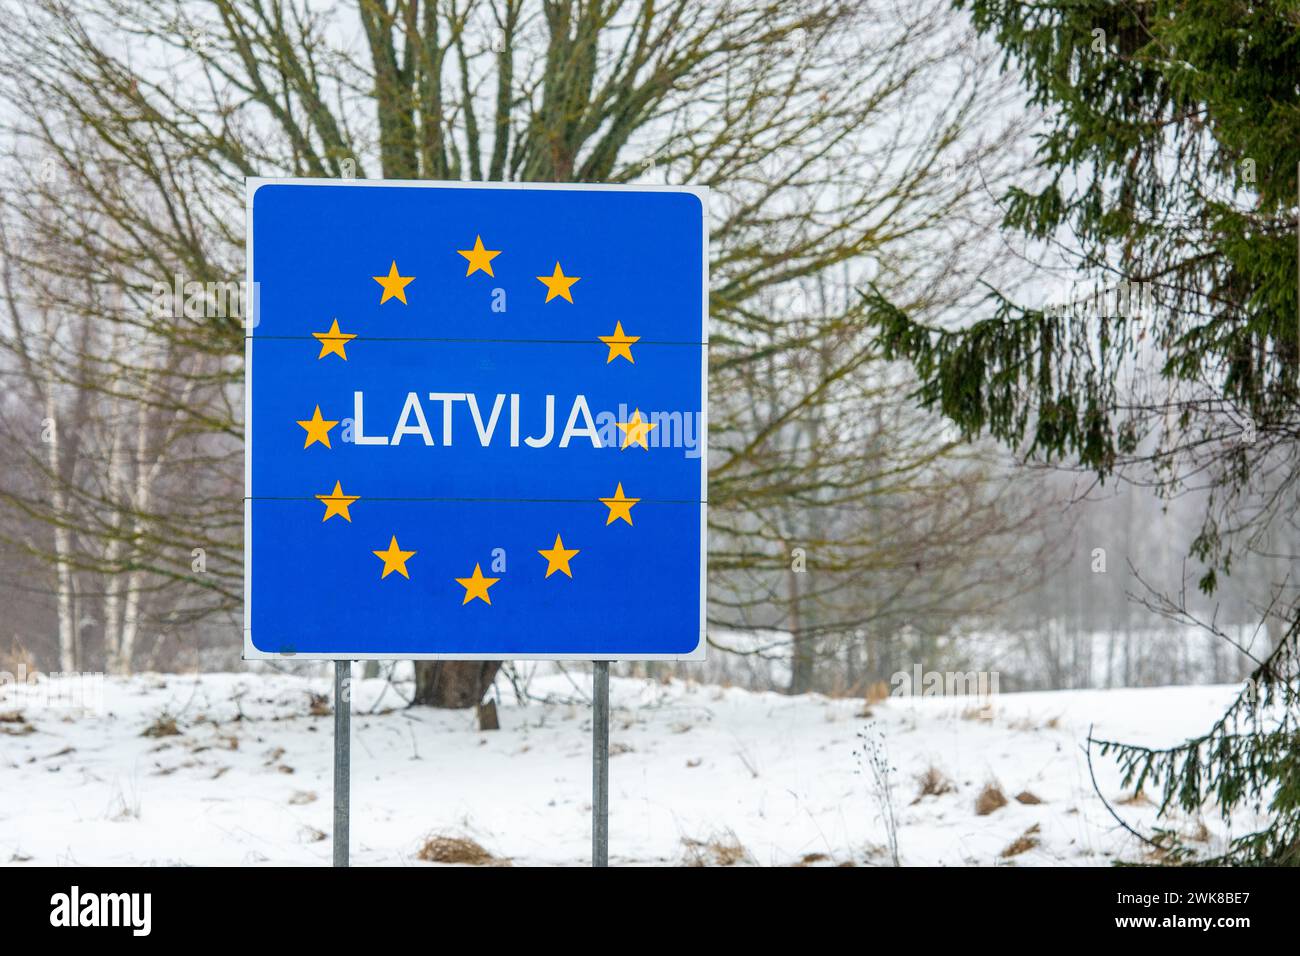 Panneau routier frontalier letton, pays baltes, Union européenne, vertical Banque D'Images